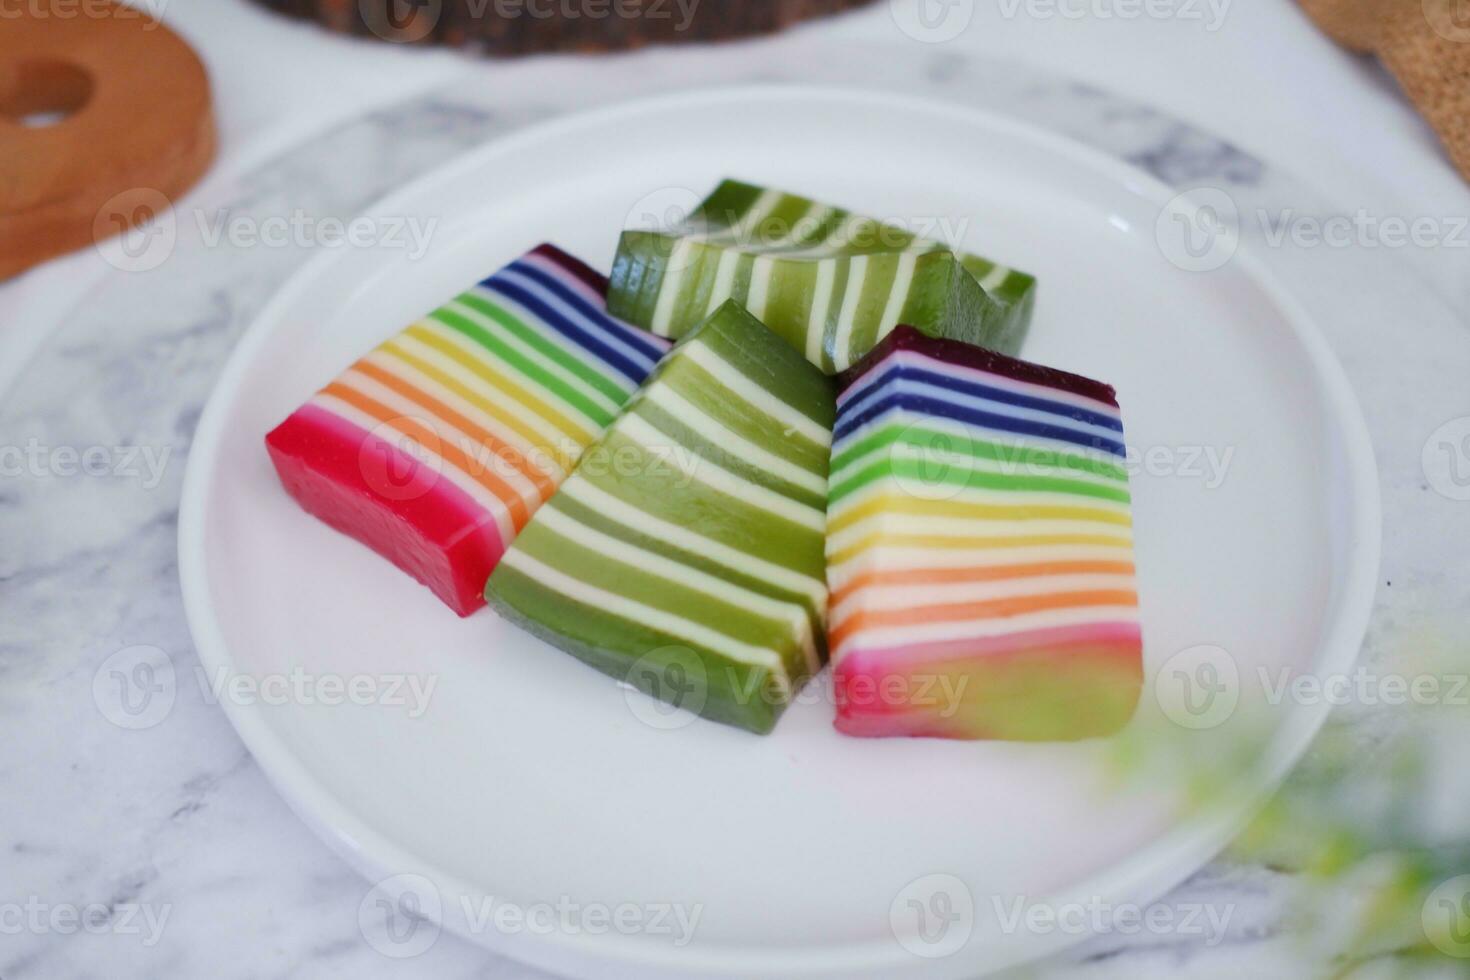 kue lapis o o arcobaleno appiccicoso strato torta, indonesiano tradizionale dolce foto